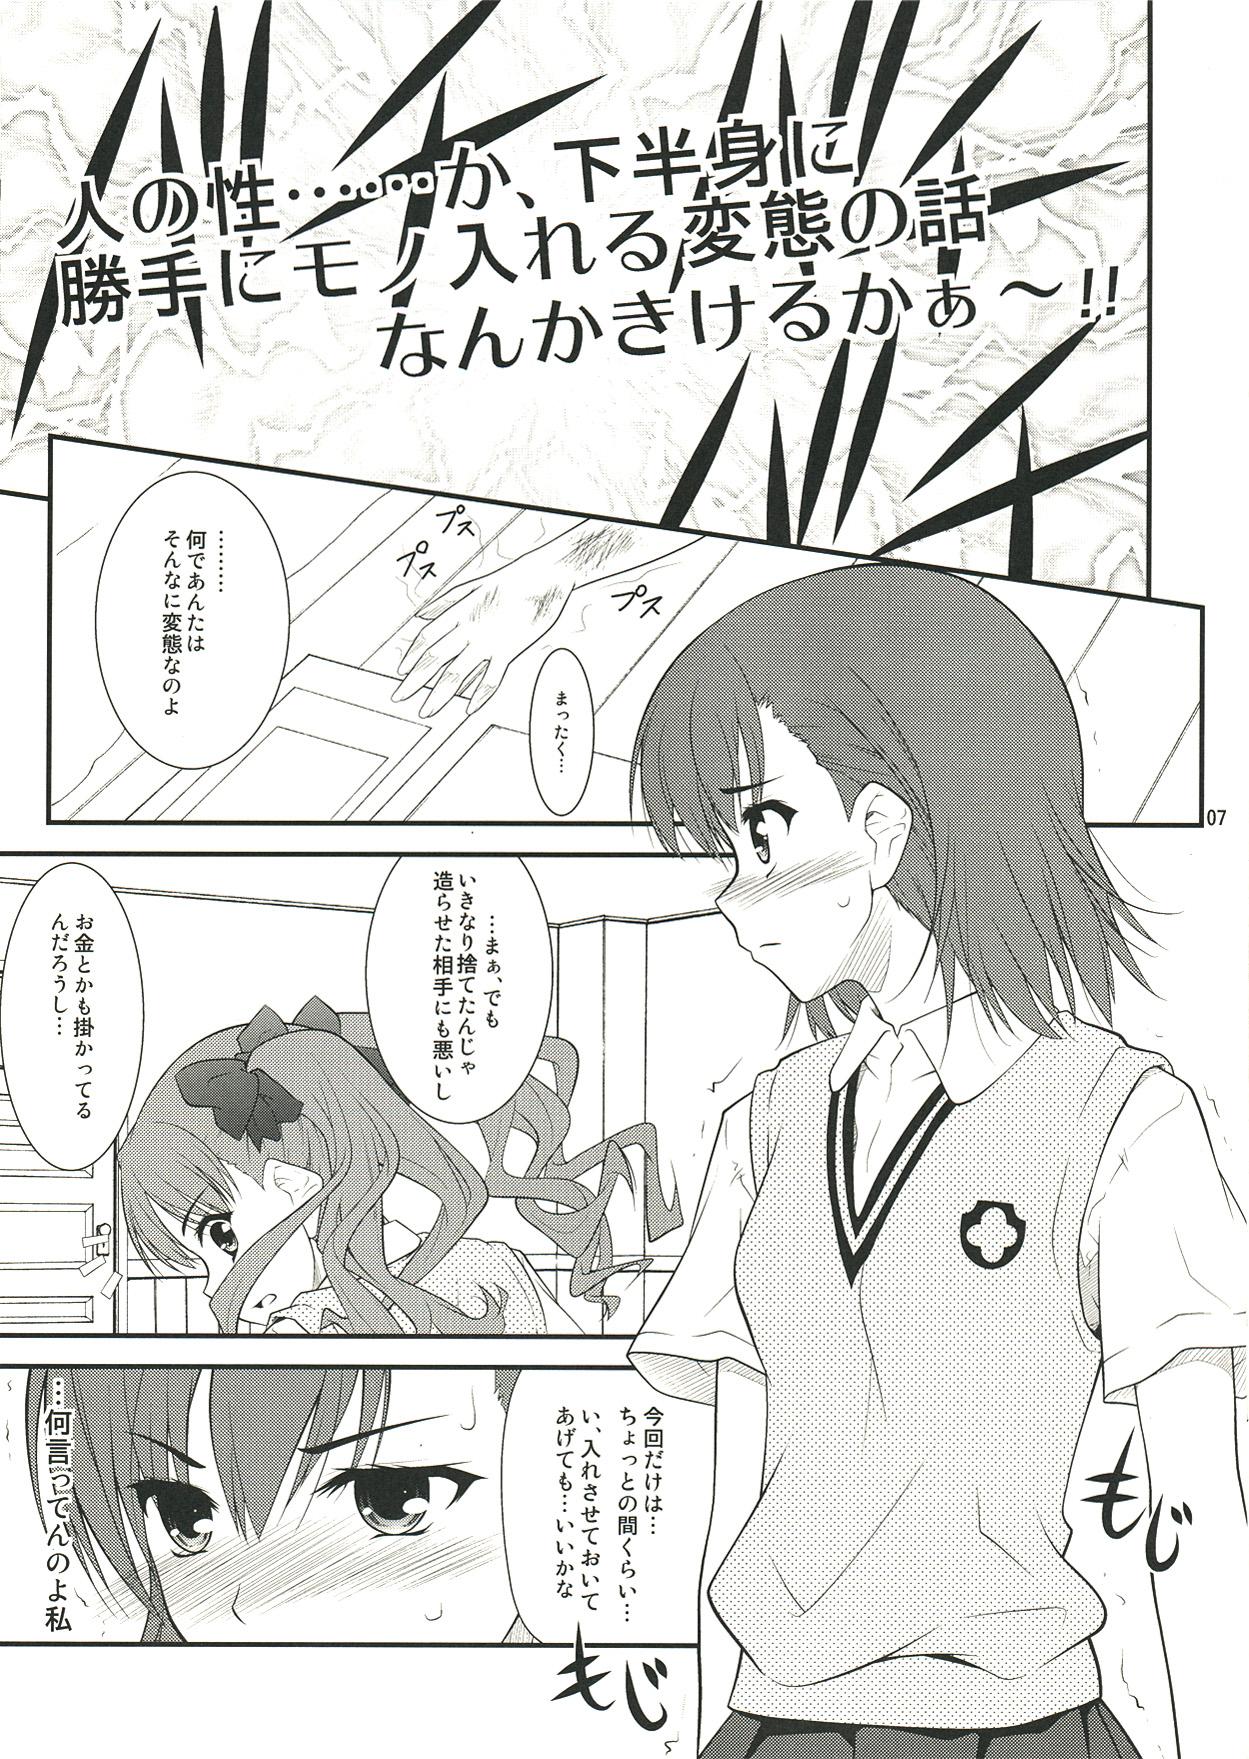 Cumshot Onee sama…Ku, Kuroko wa Kuroko wa Mou ! - Toaru kagaku no railgun Que - Page 7